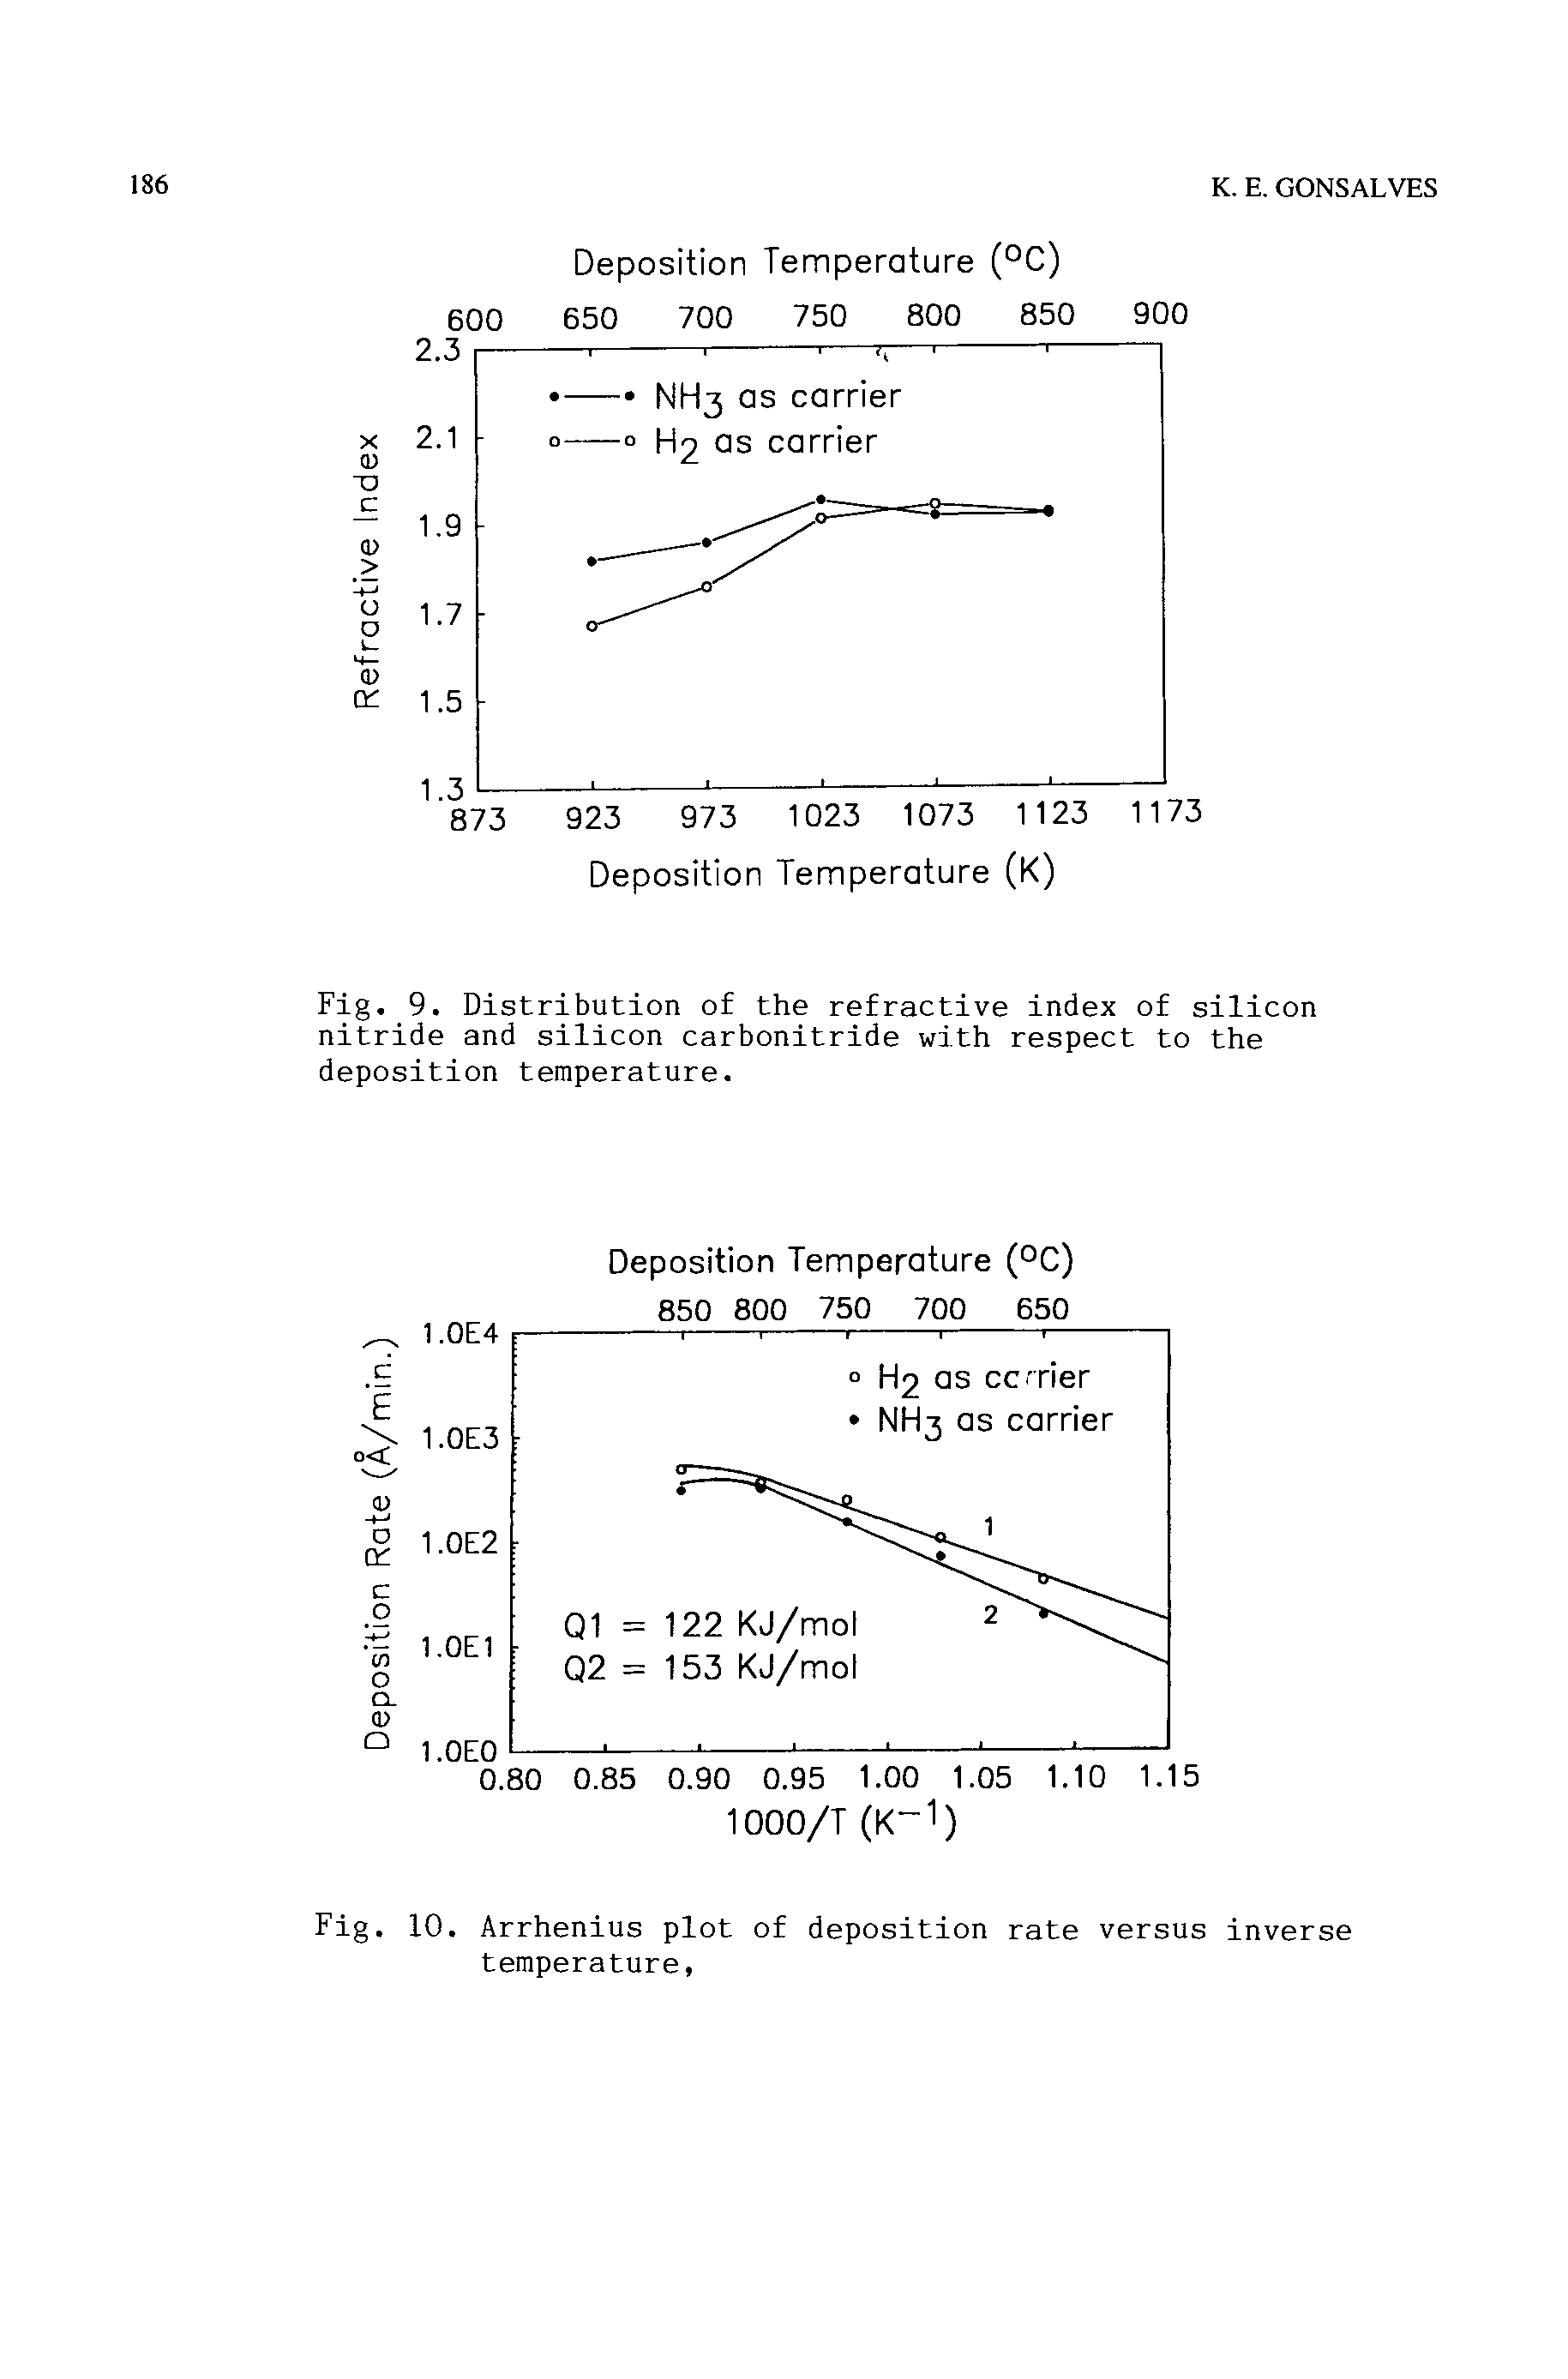 Fig. 10. Arrhenius plot of deposition rate versus inverse temperature,...